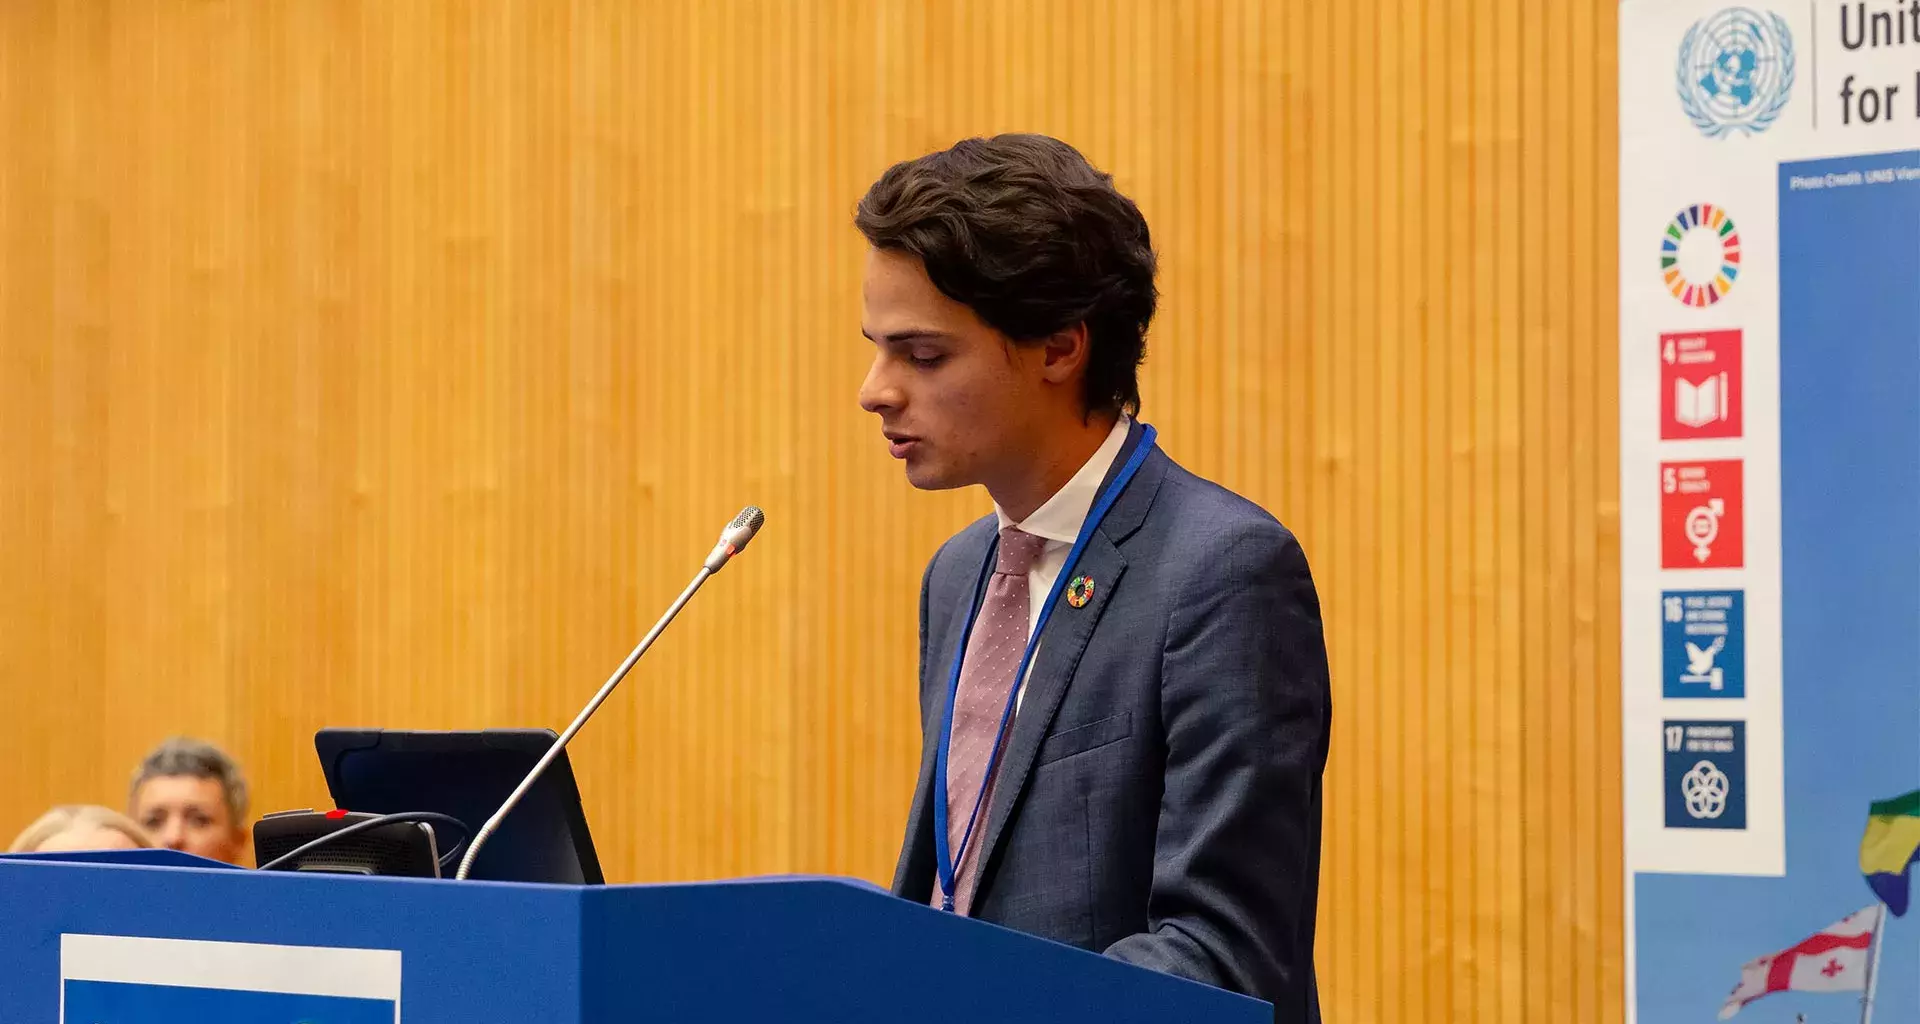 Representará a México como delegado juvenil ante la ONU